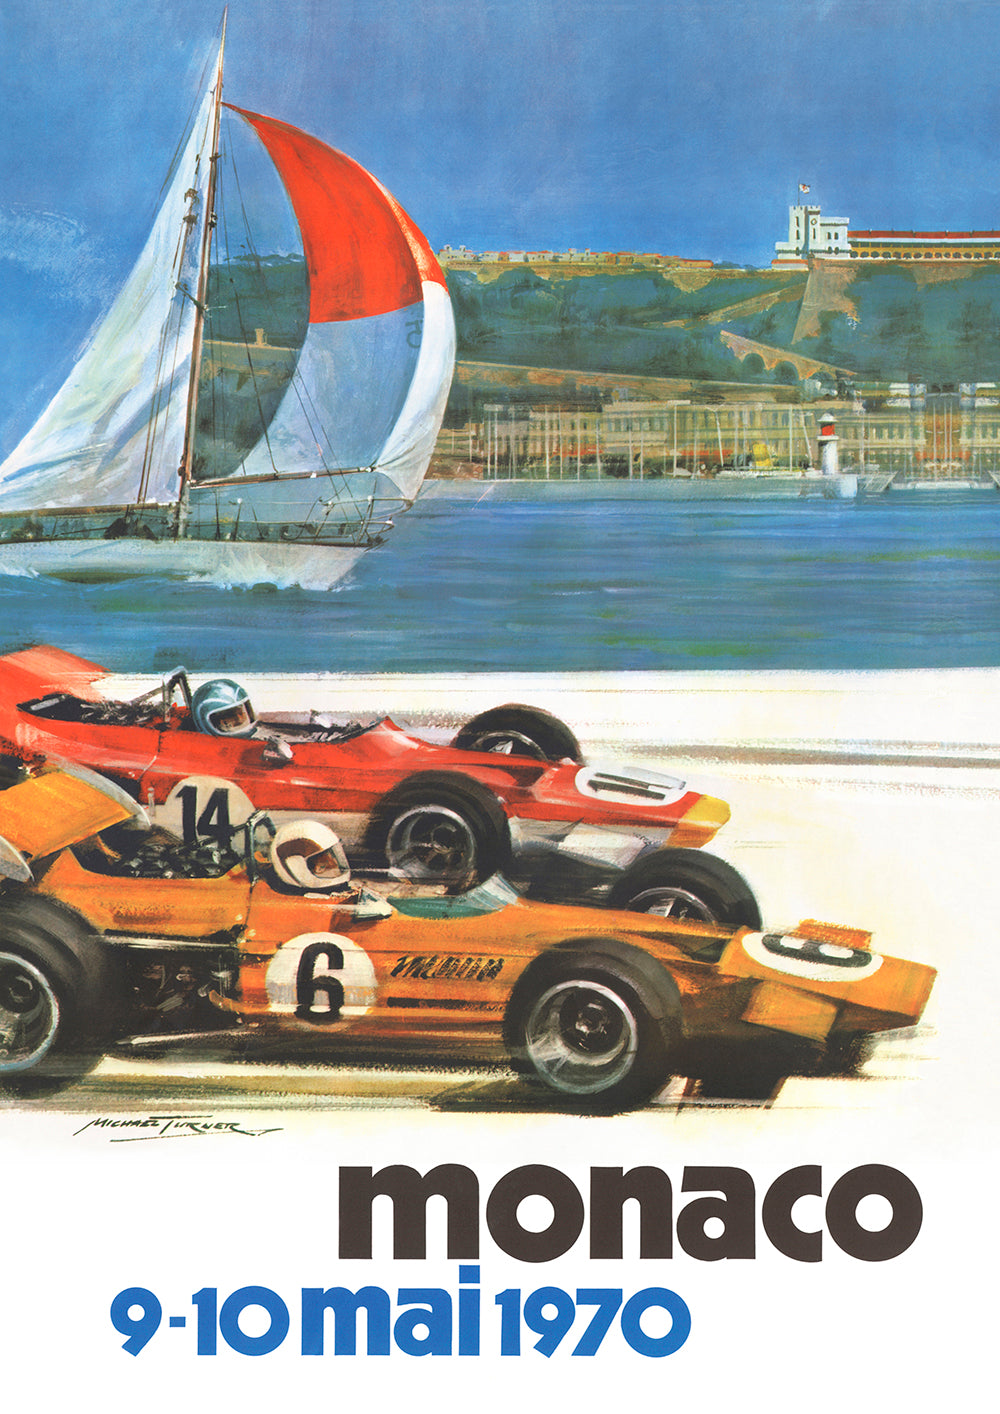 1970 Monaco Grand Prix Poster